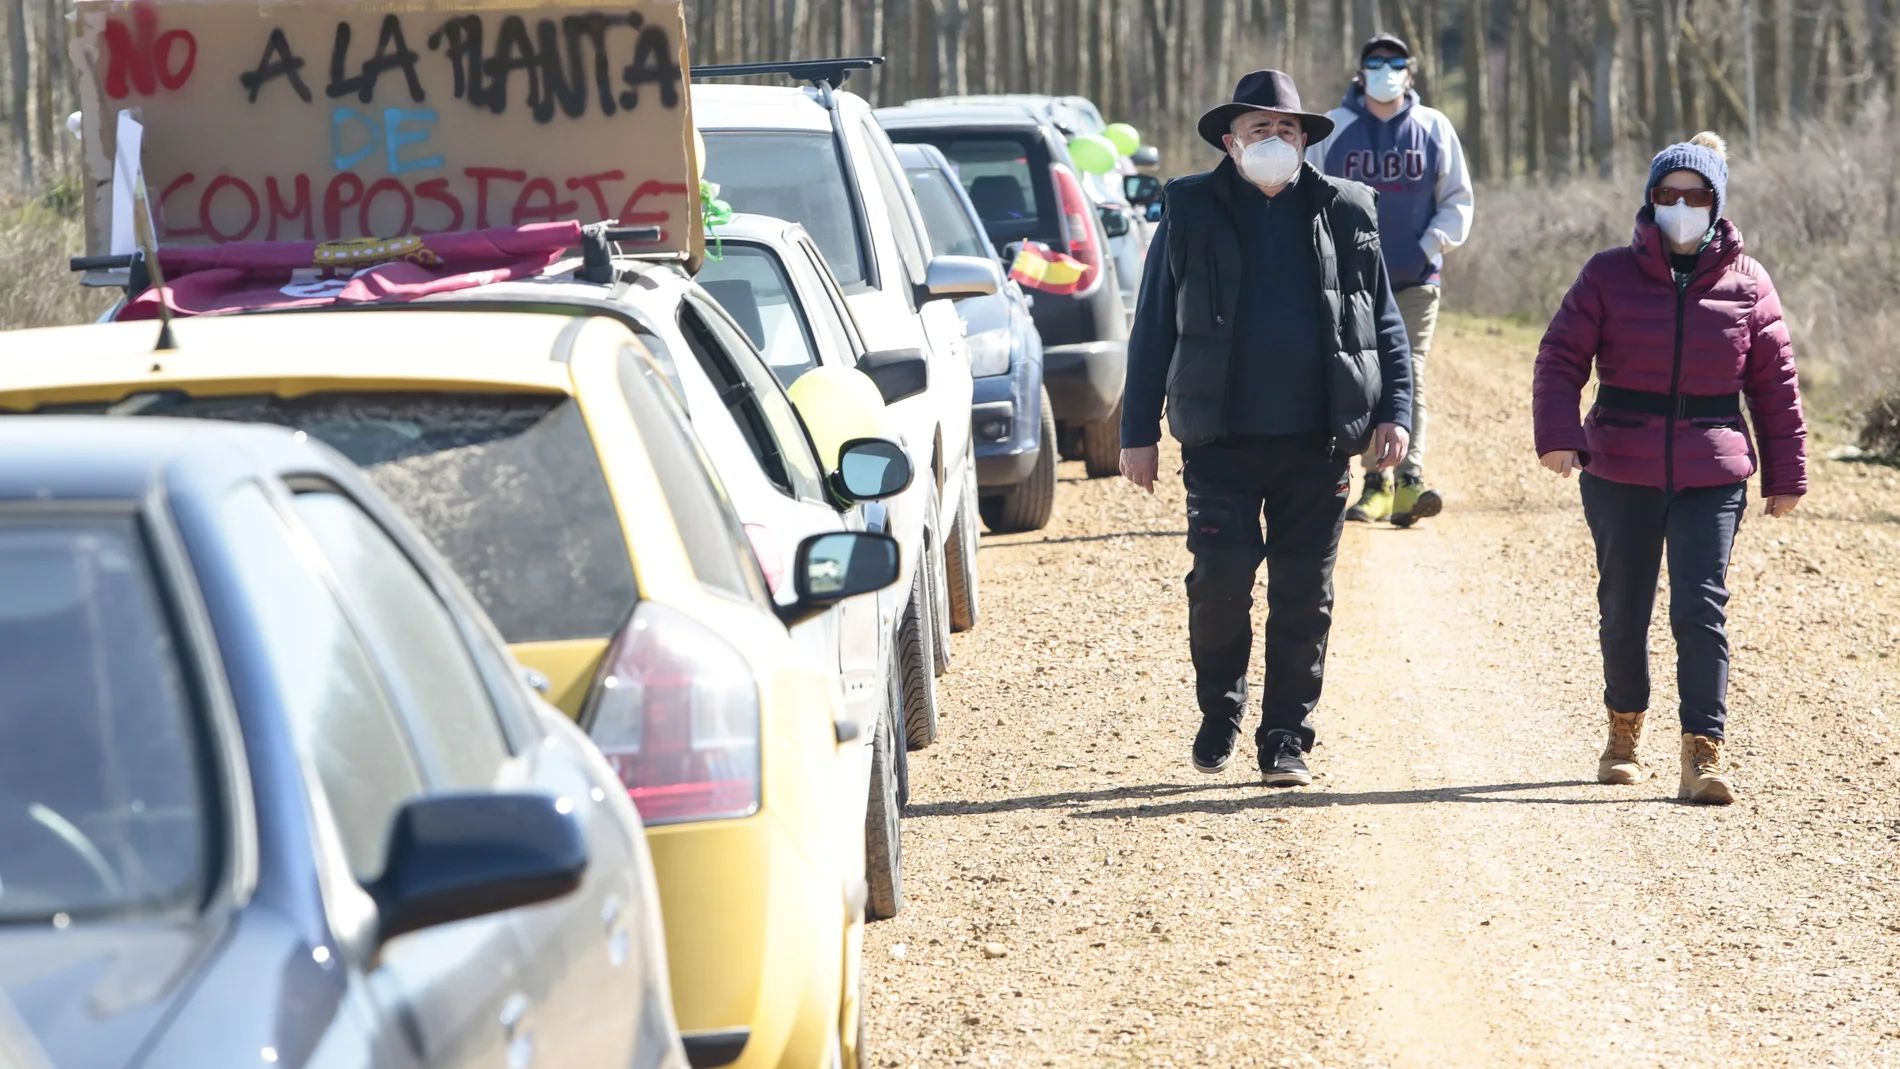 La Asociación Medioambiental Valle de Valdearcos organiza una caravana de vehículos en protesta por la instalación de una planta de compostaje de lodos en Reliegos